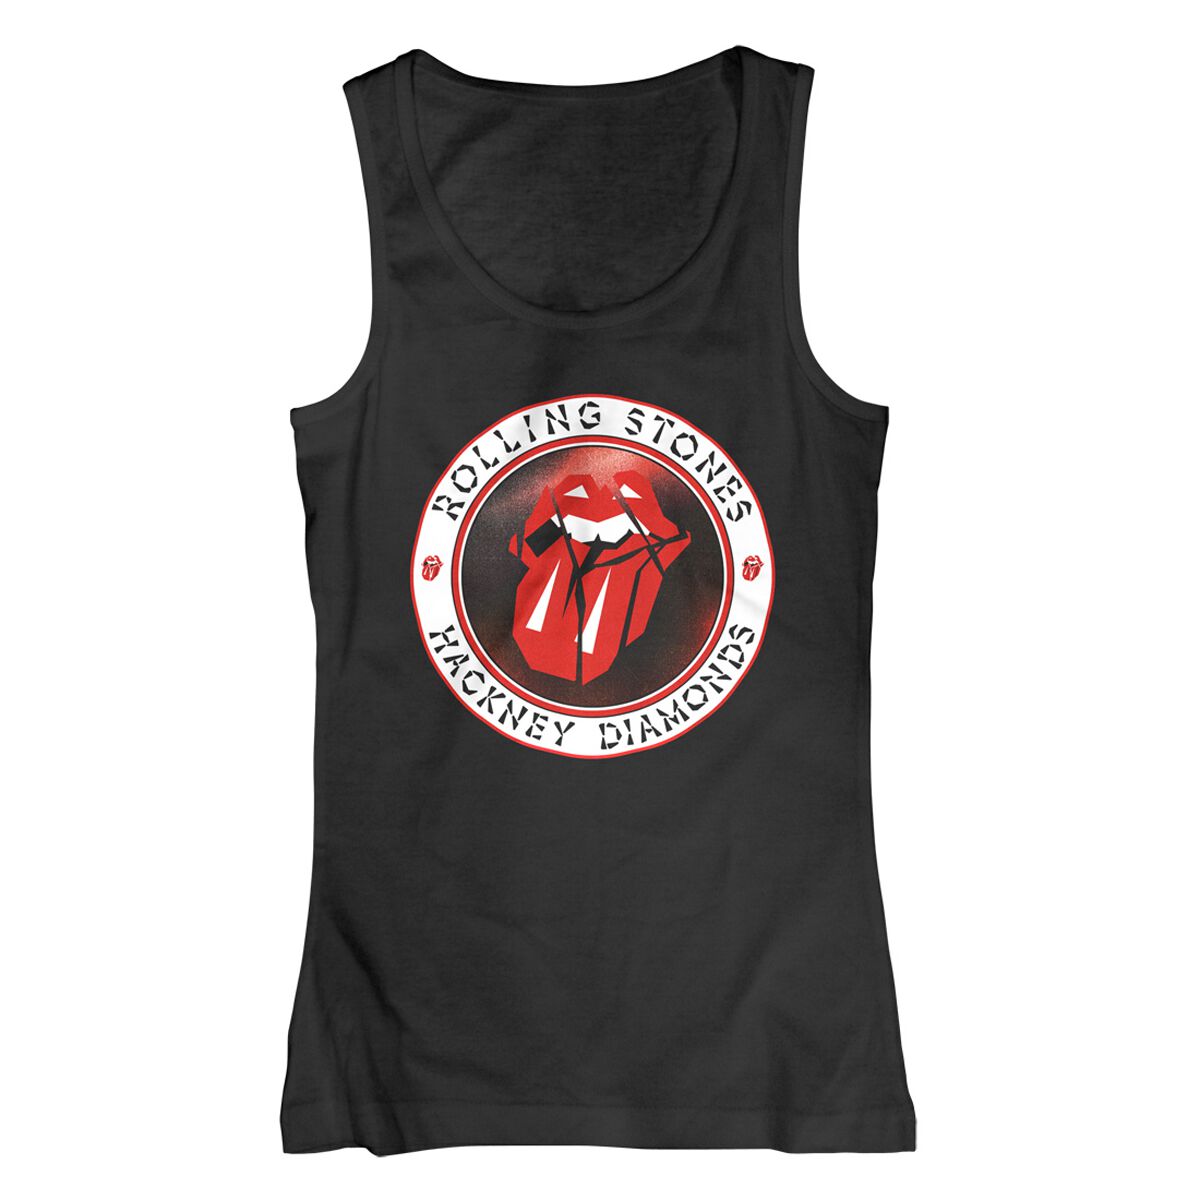 The Rolling Stones Top - Hackney Diamonds Circle Label - S bis XXL - für Damen - Größe XL - schwarz  - Lizenziertes Merchandise!